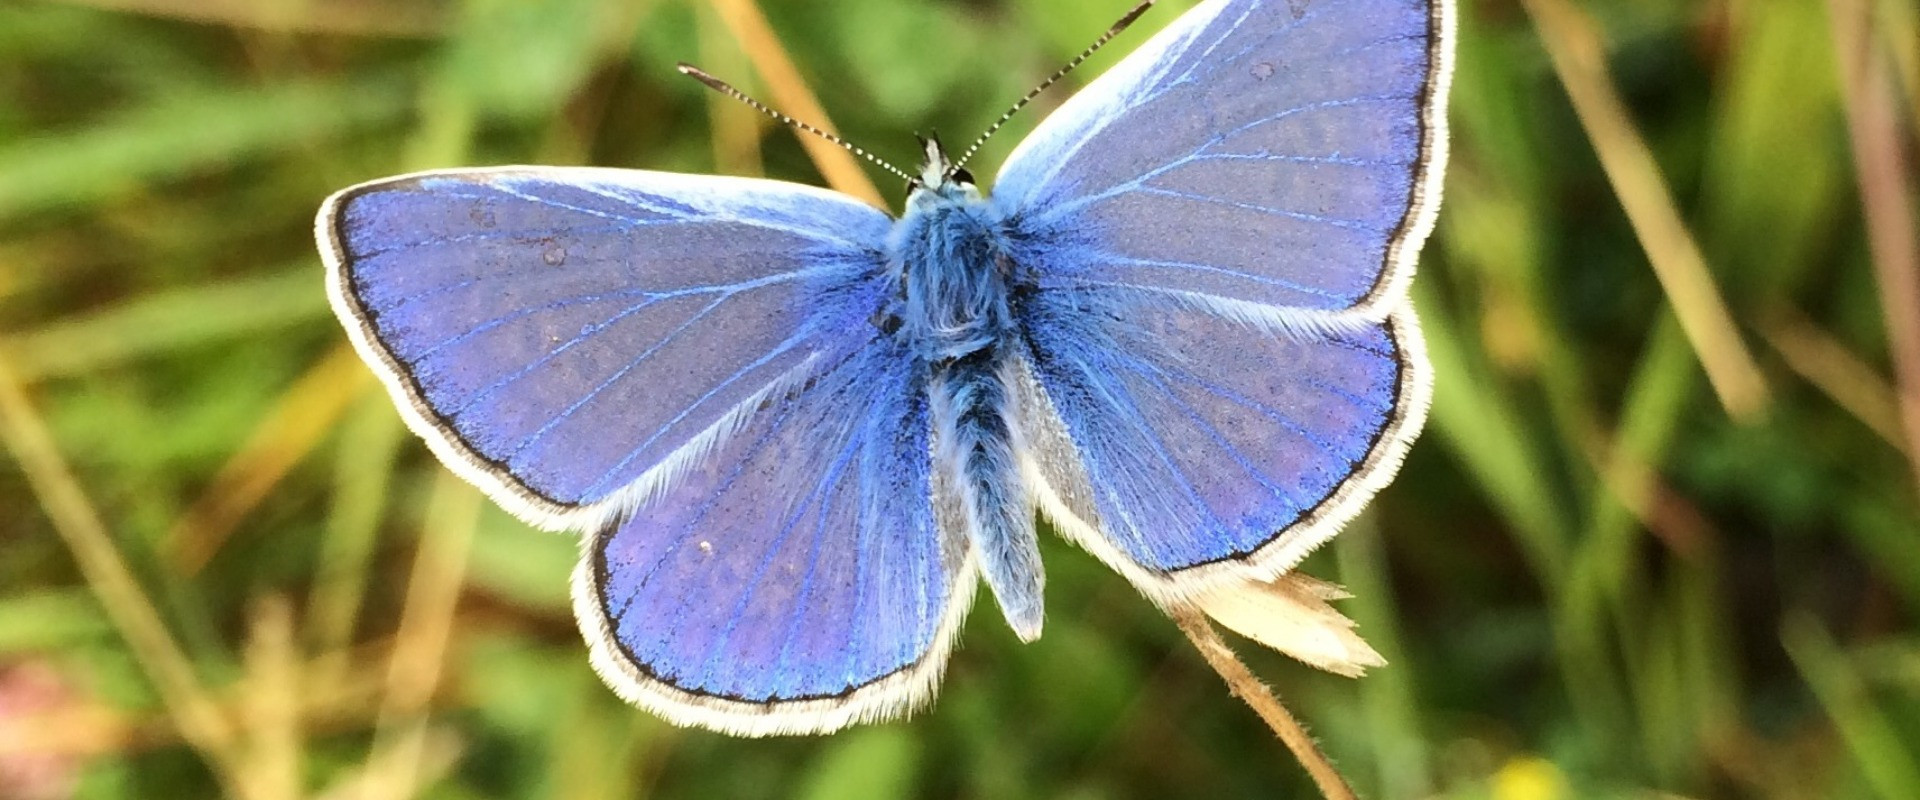 een vlinder als symbool van rouw voor hulp bij rouwverwerking